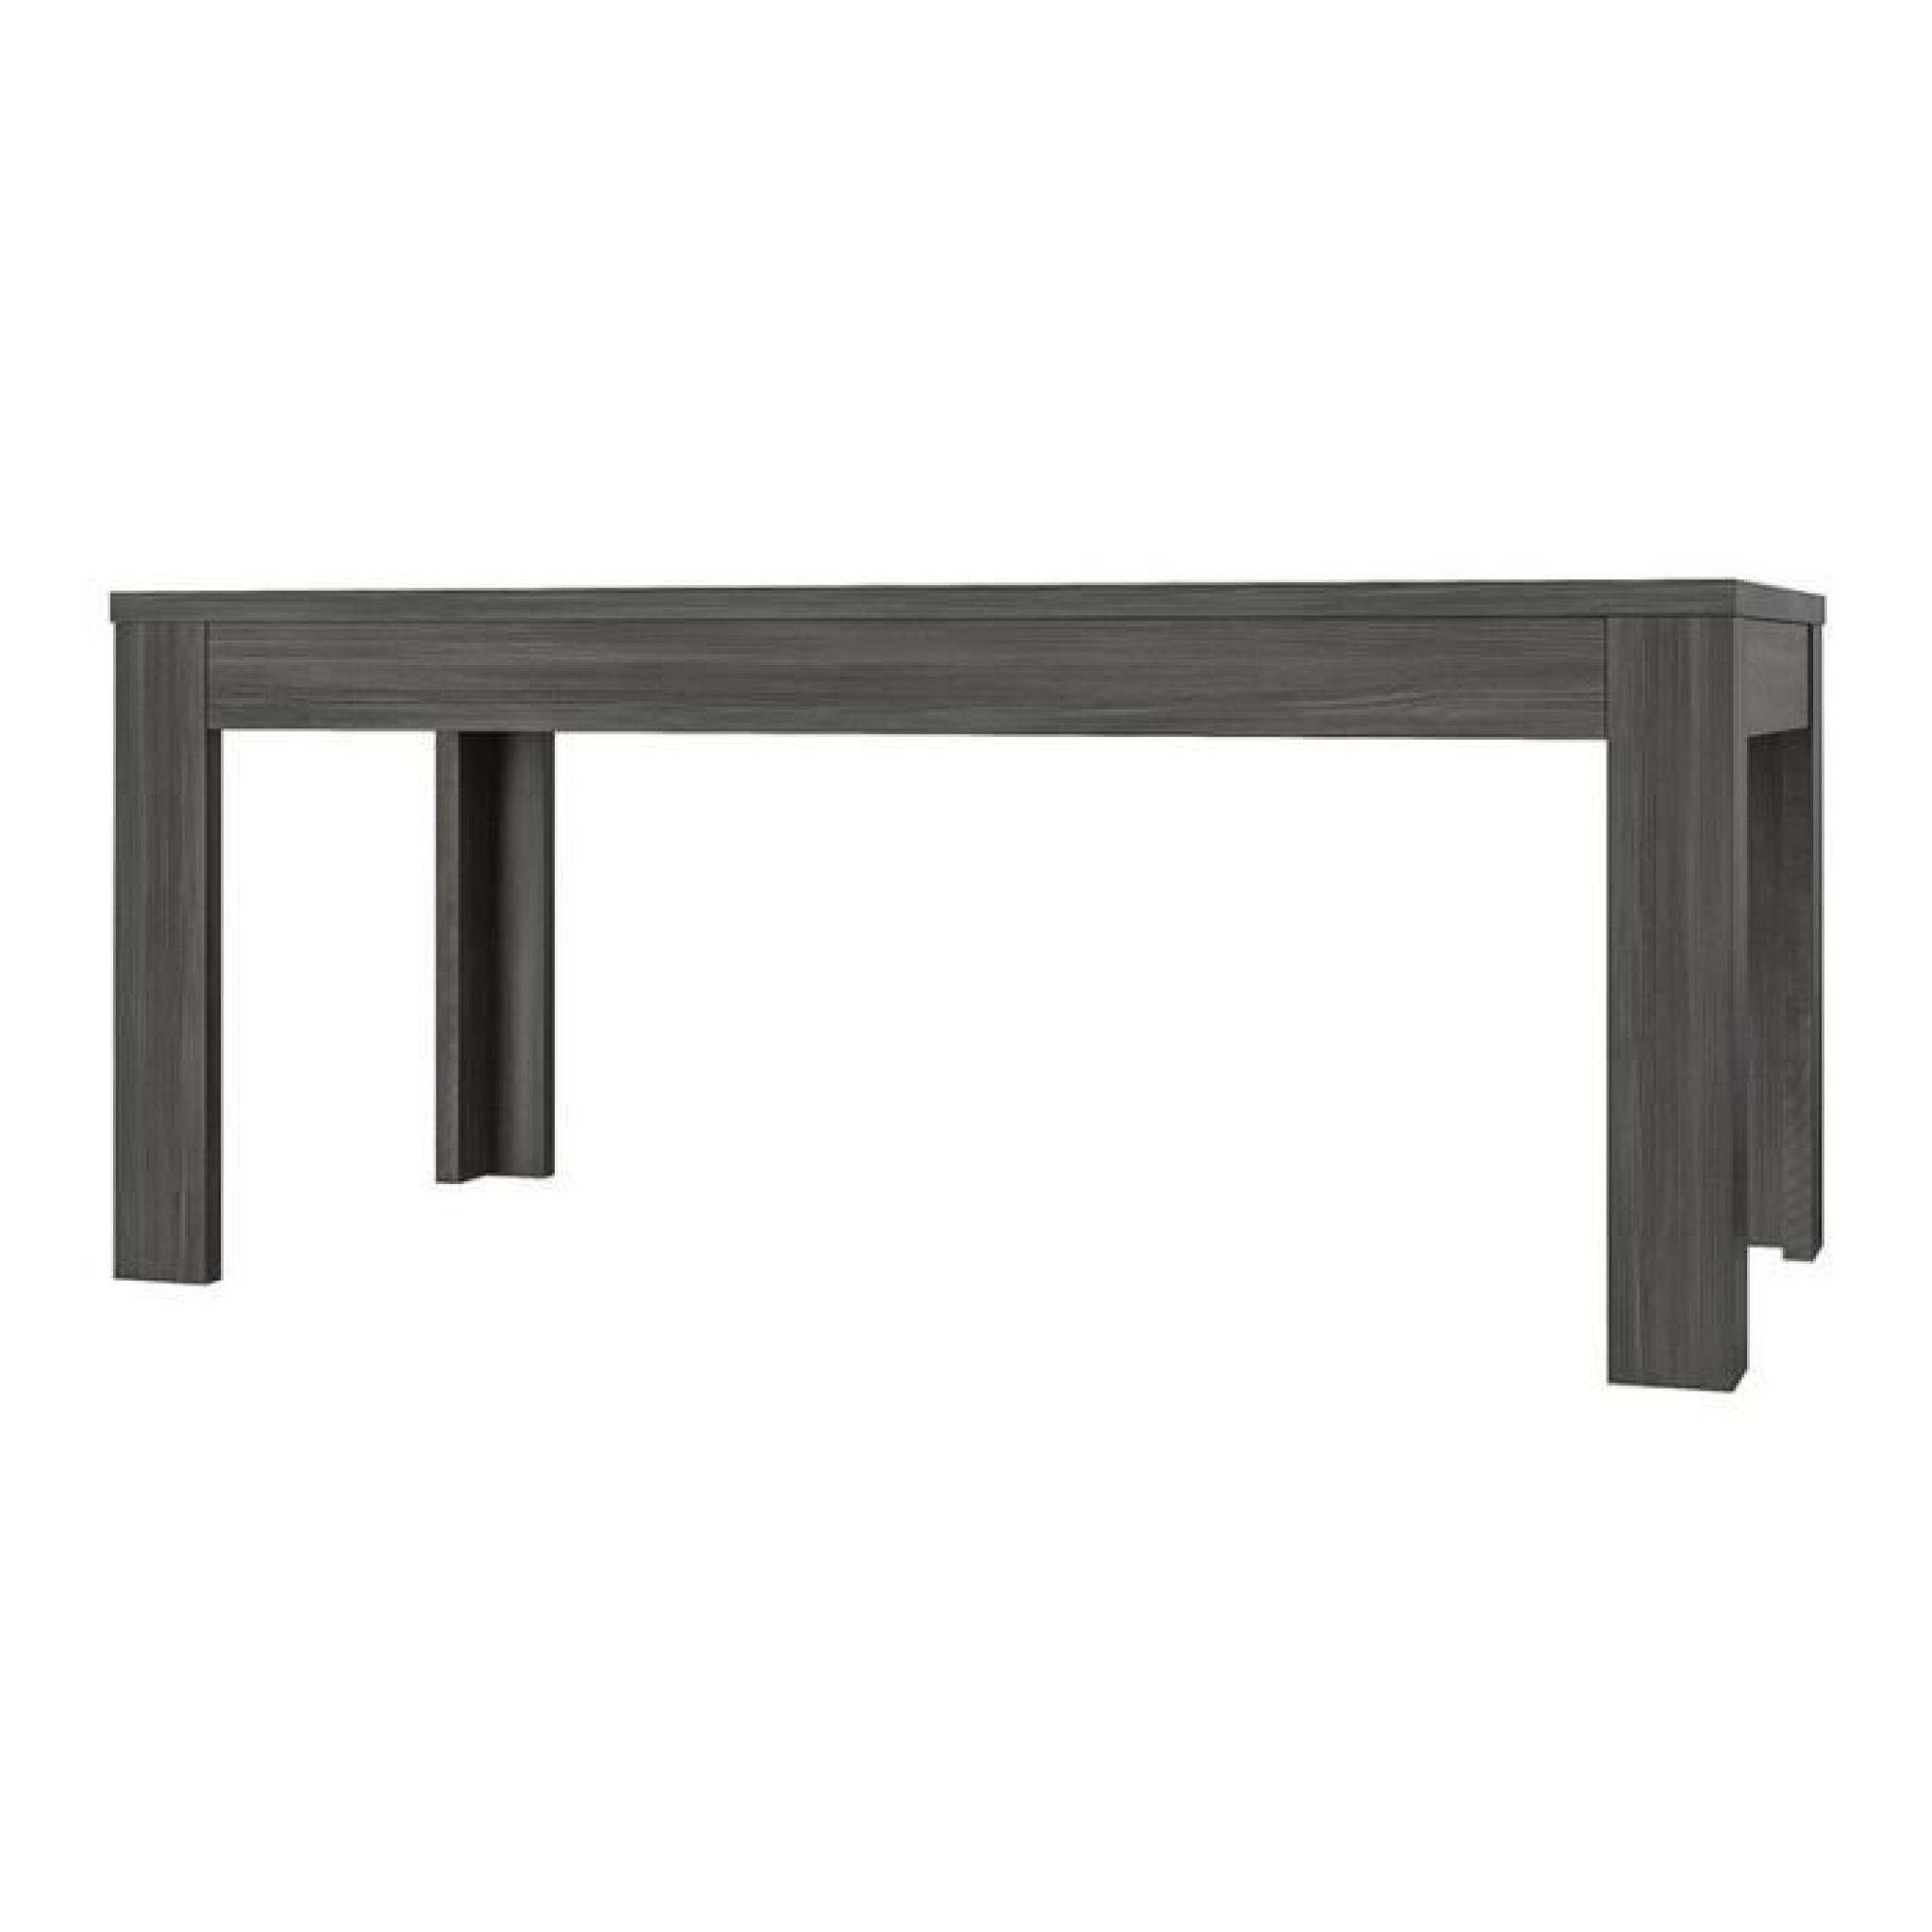 . Table coloris chêne noir Ally extensible 170-220 cm.